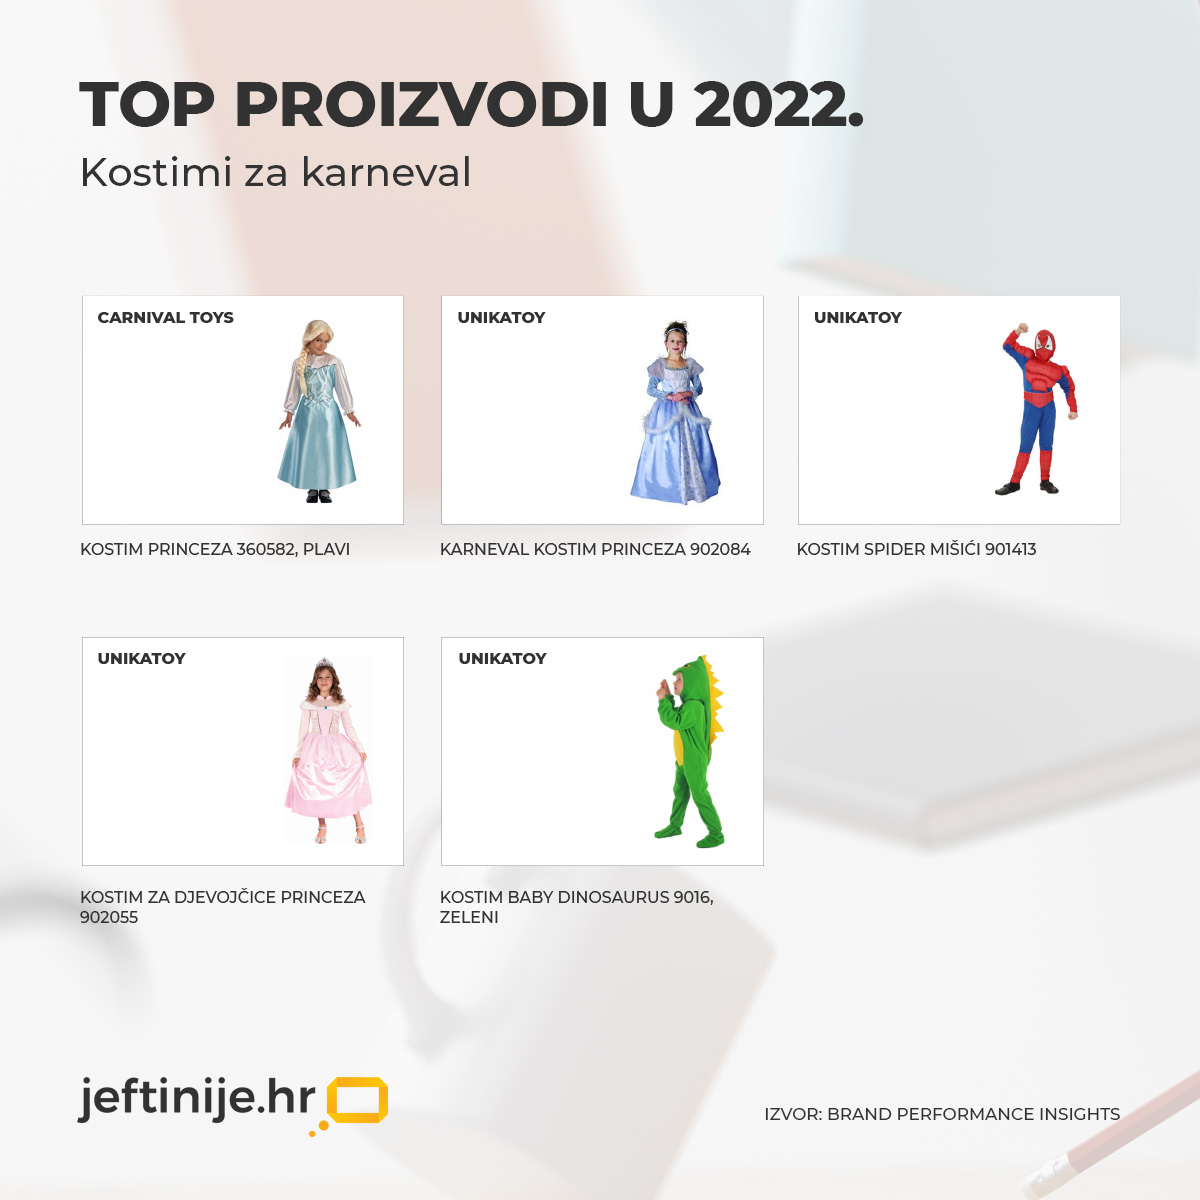 TOP 5 karnevalskih kostima u 2022. 